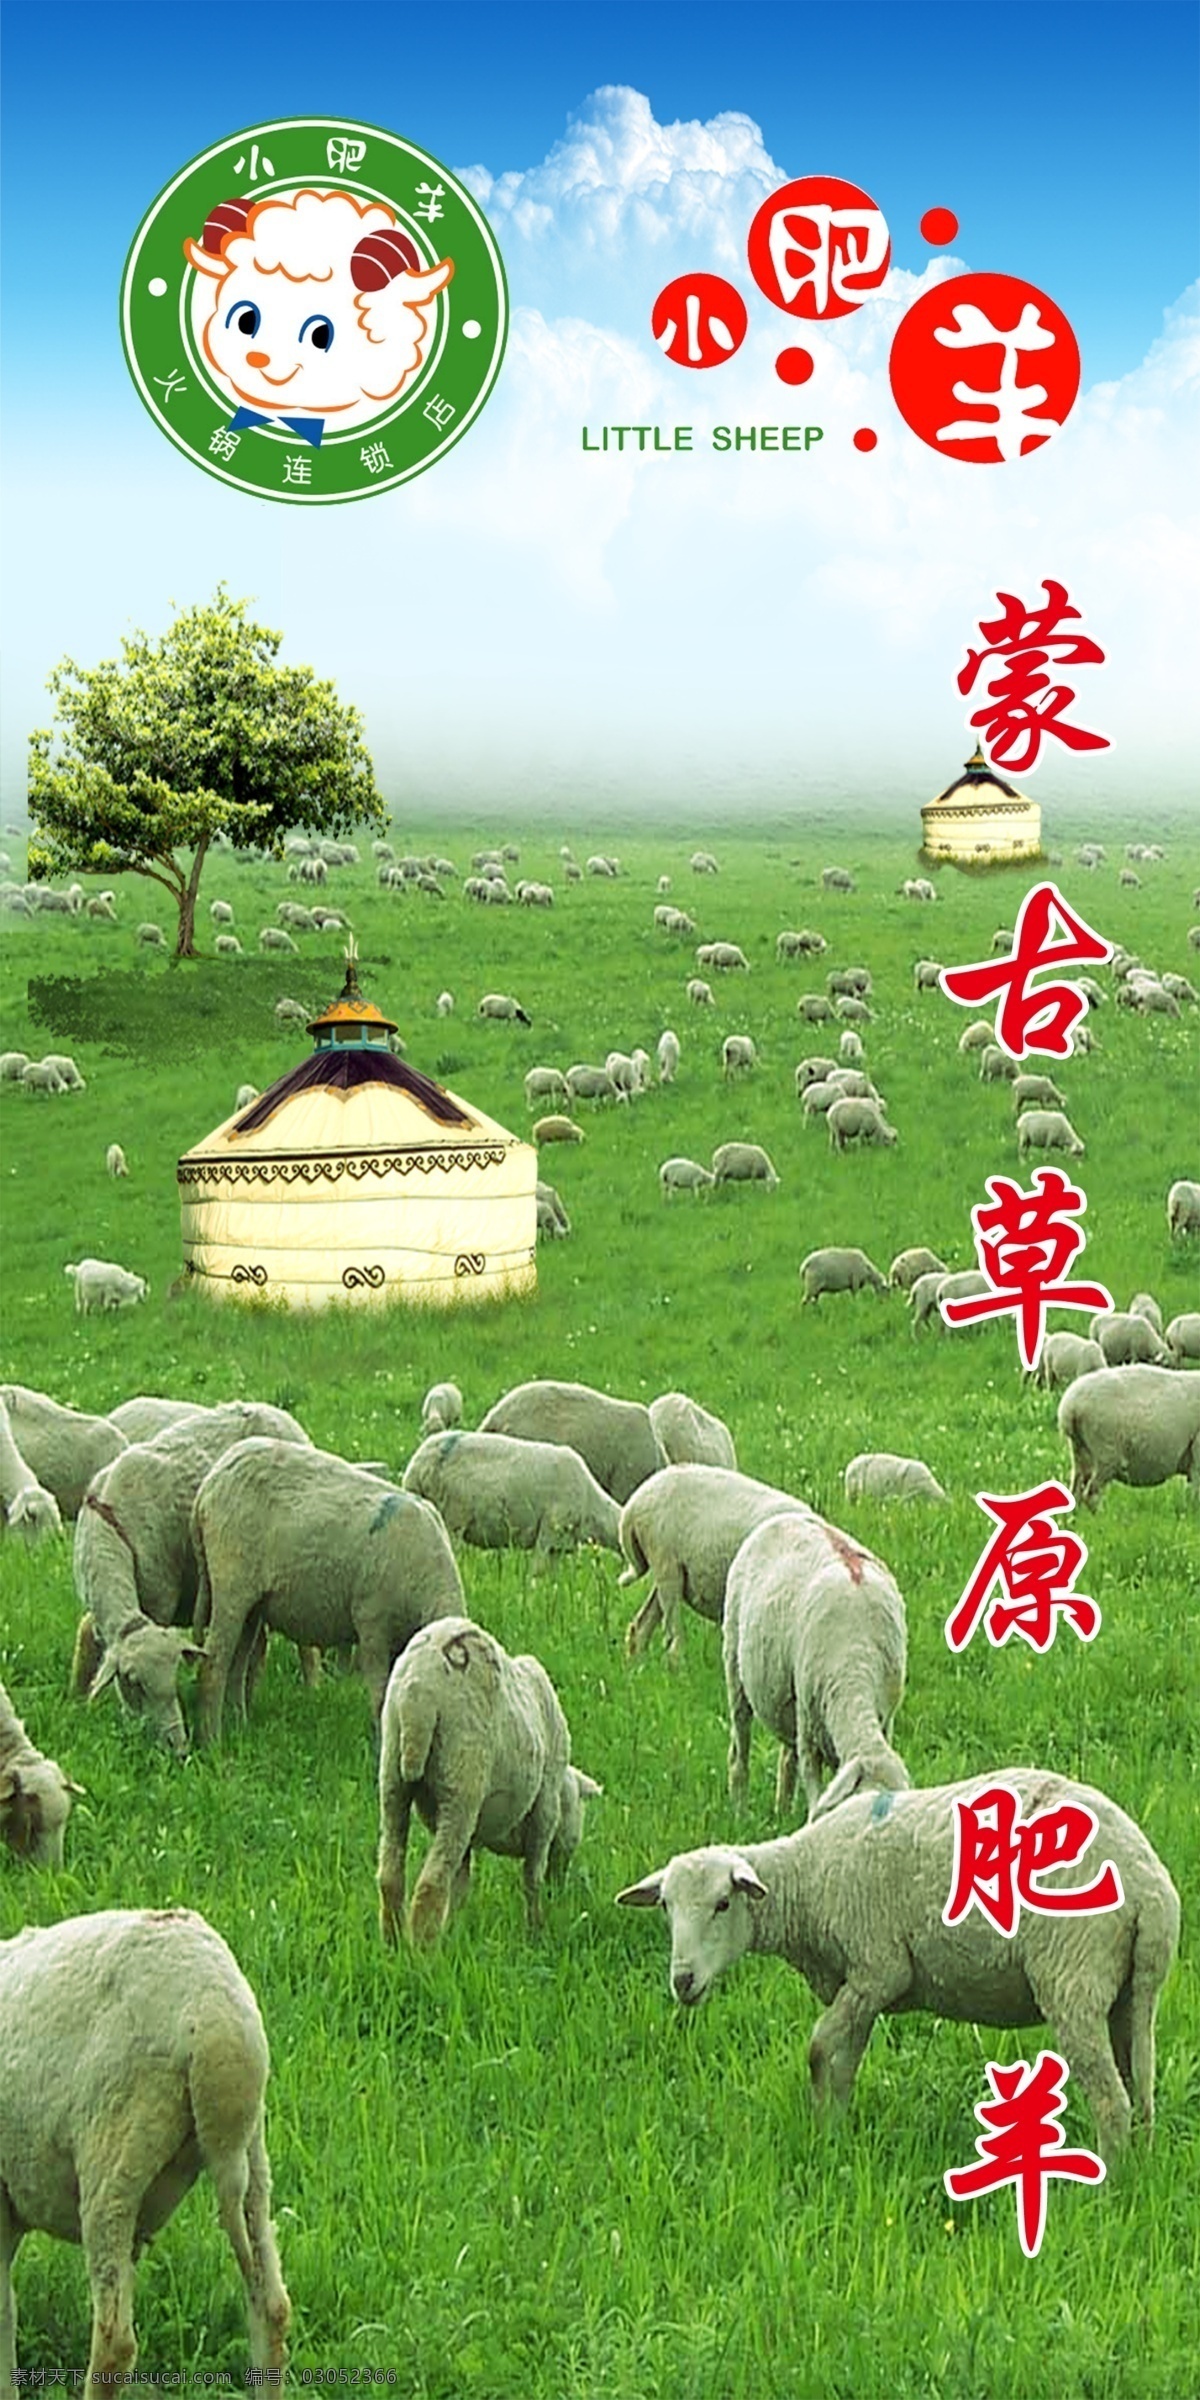 小肥羊 小肥羊标志 蒙古草原肥羊 羊群 草原 蒙古包 广告设计模板 源文件